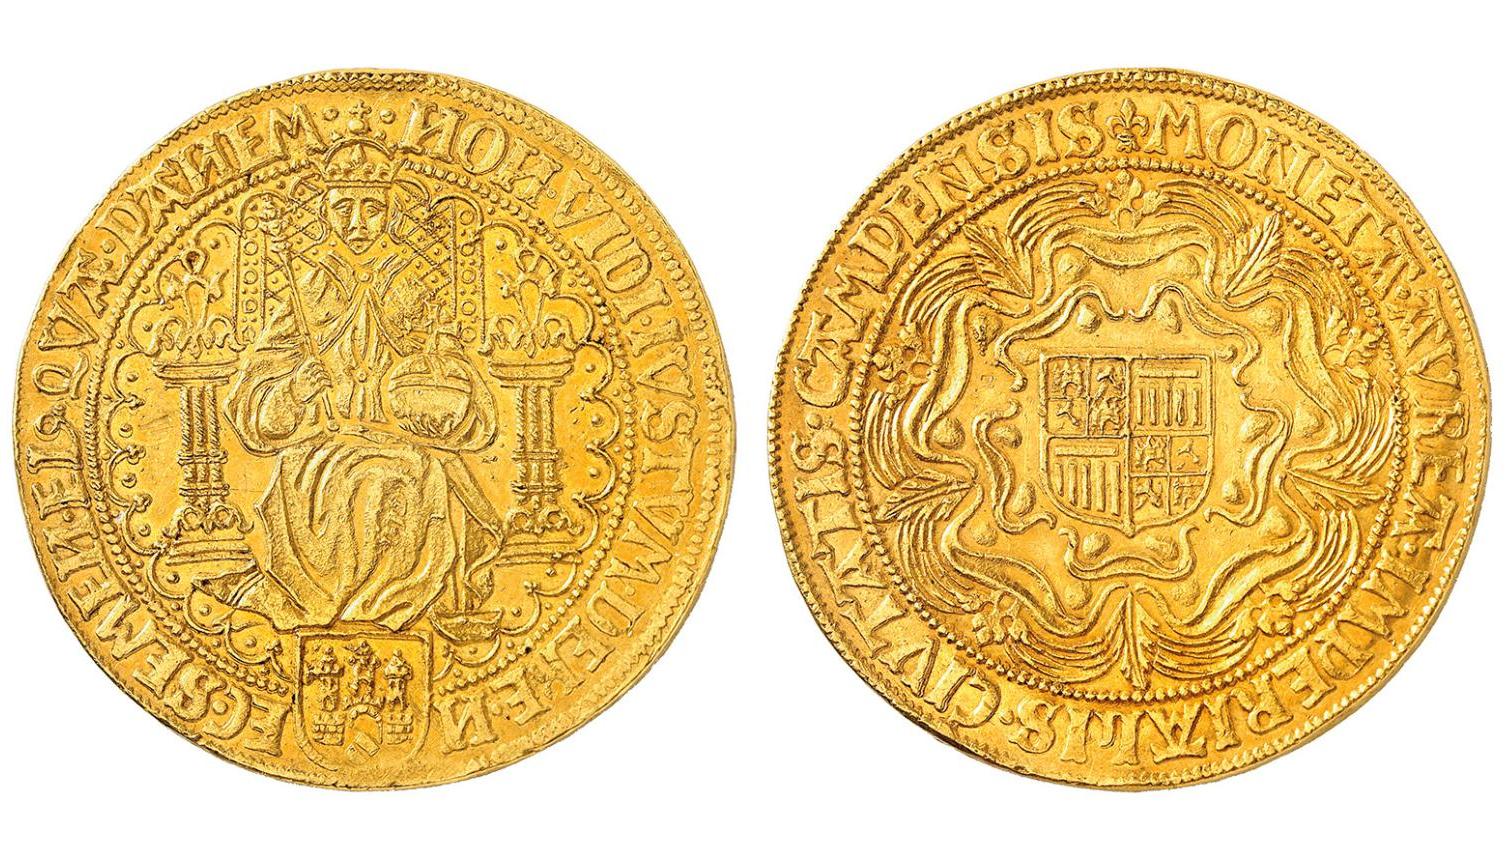 Pays-Bas, Kampen, octuple rosenoble, 1600, or, 60,95 g. Adjugé : 875 000 € La collection Salton : une vente en or 